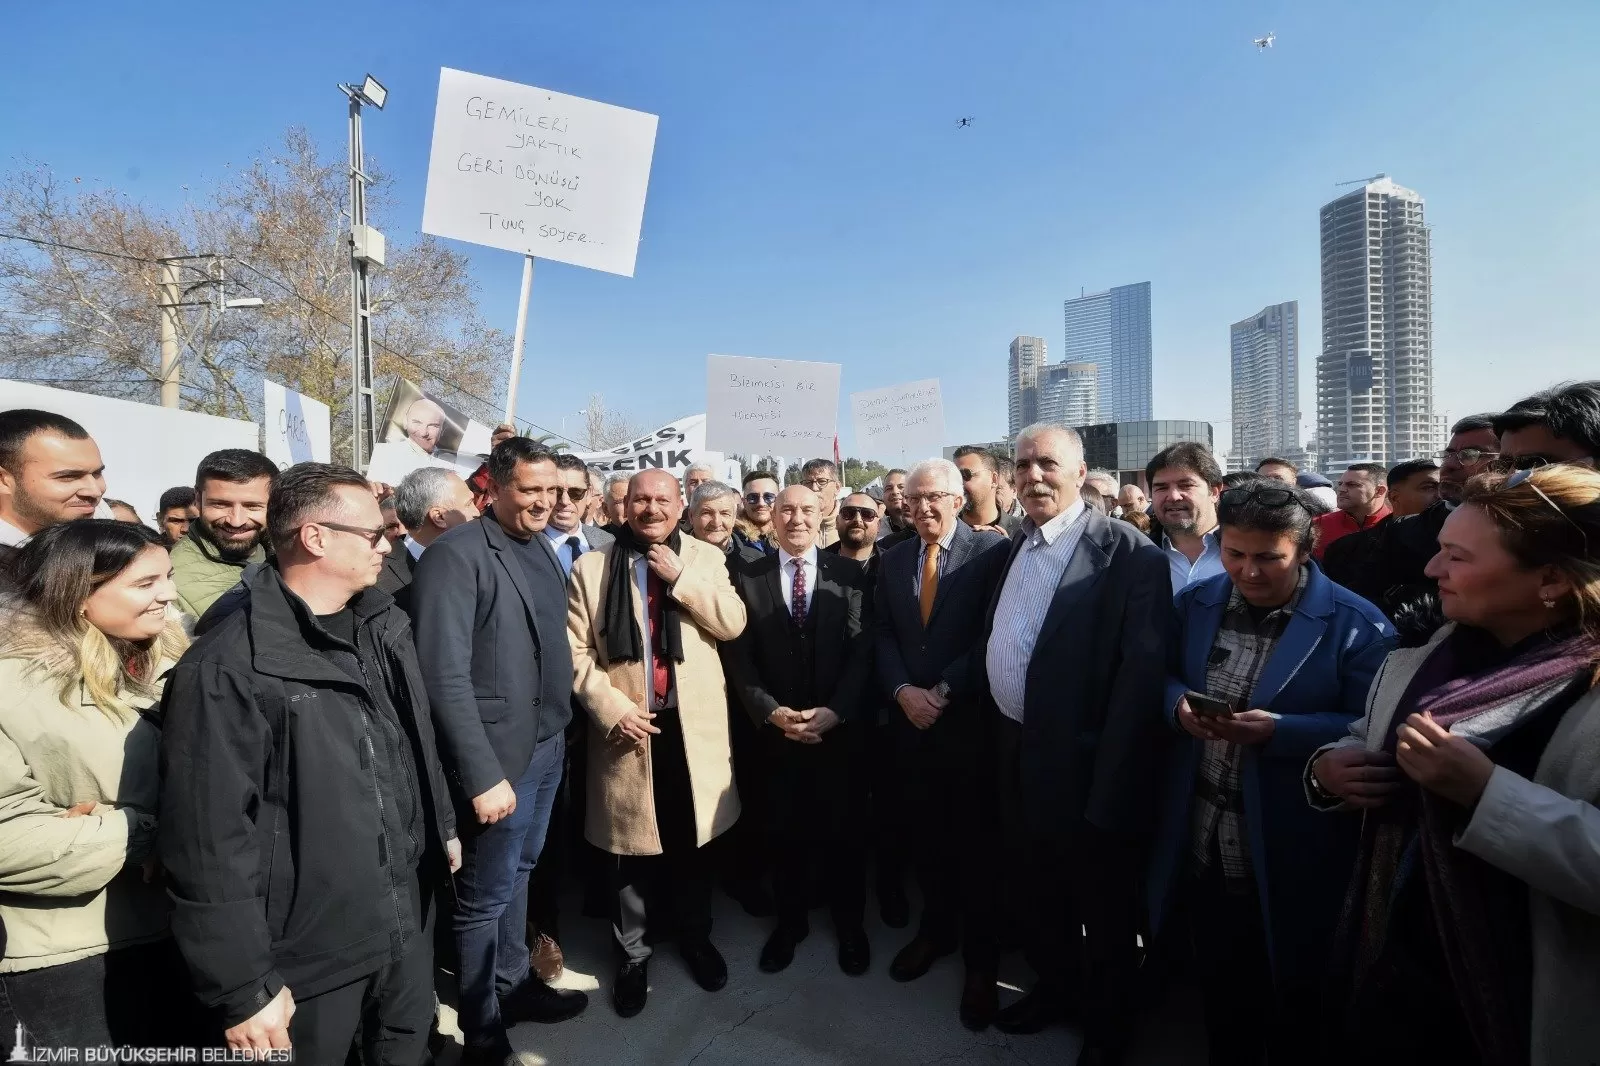 İzmir Büyükşehir Belediyesi, Türkiye'ye örnek gösterilen kentsel dönüşüm projelerine bir yenisini daha ekledi.